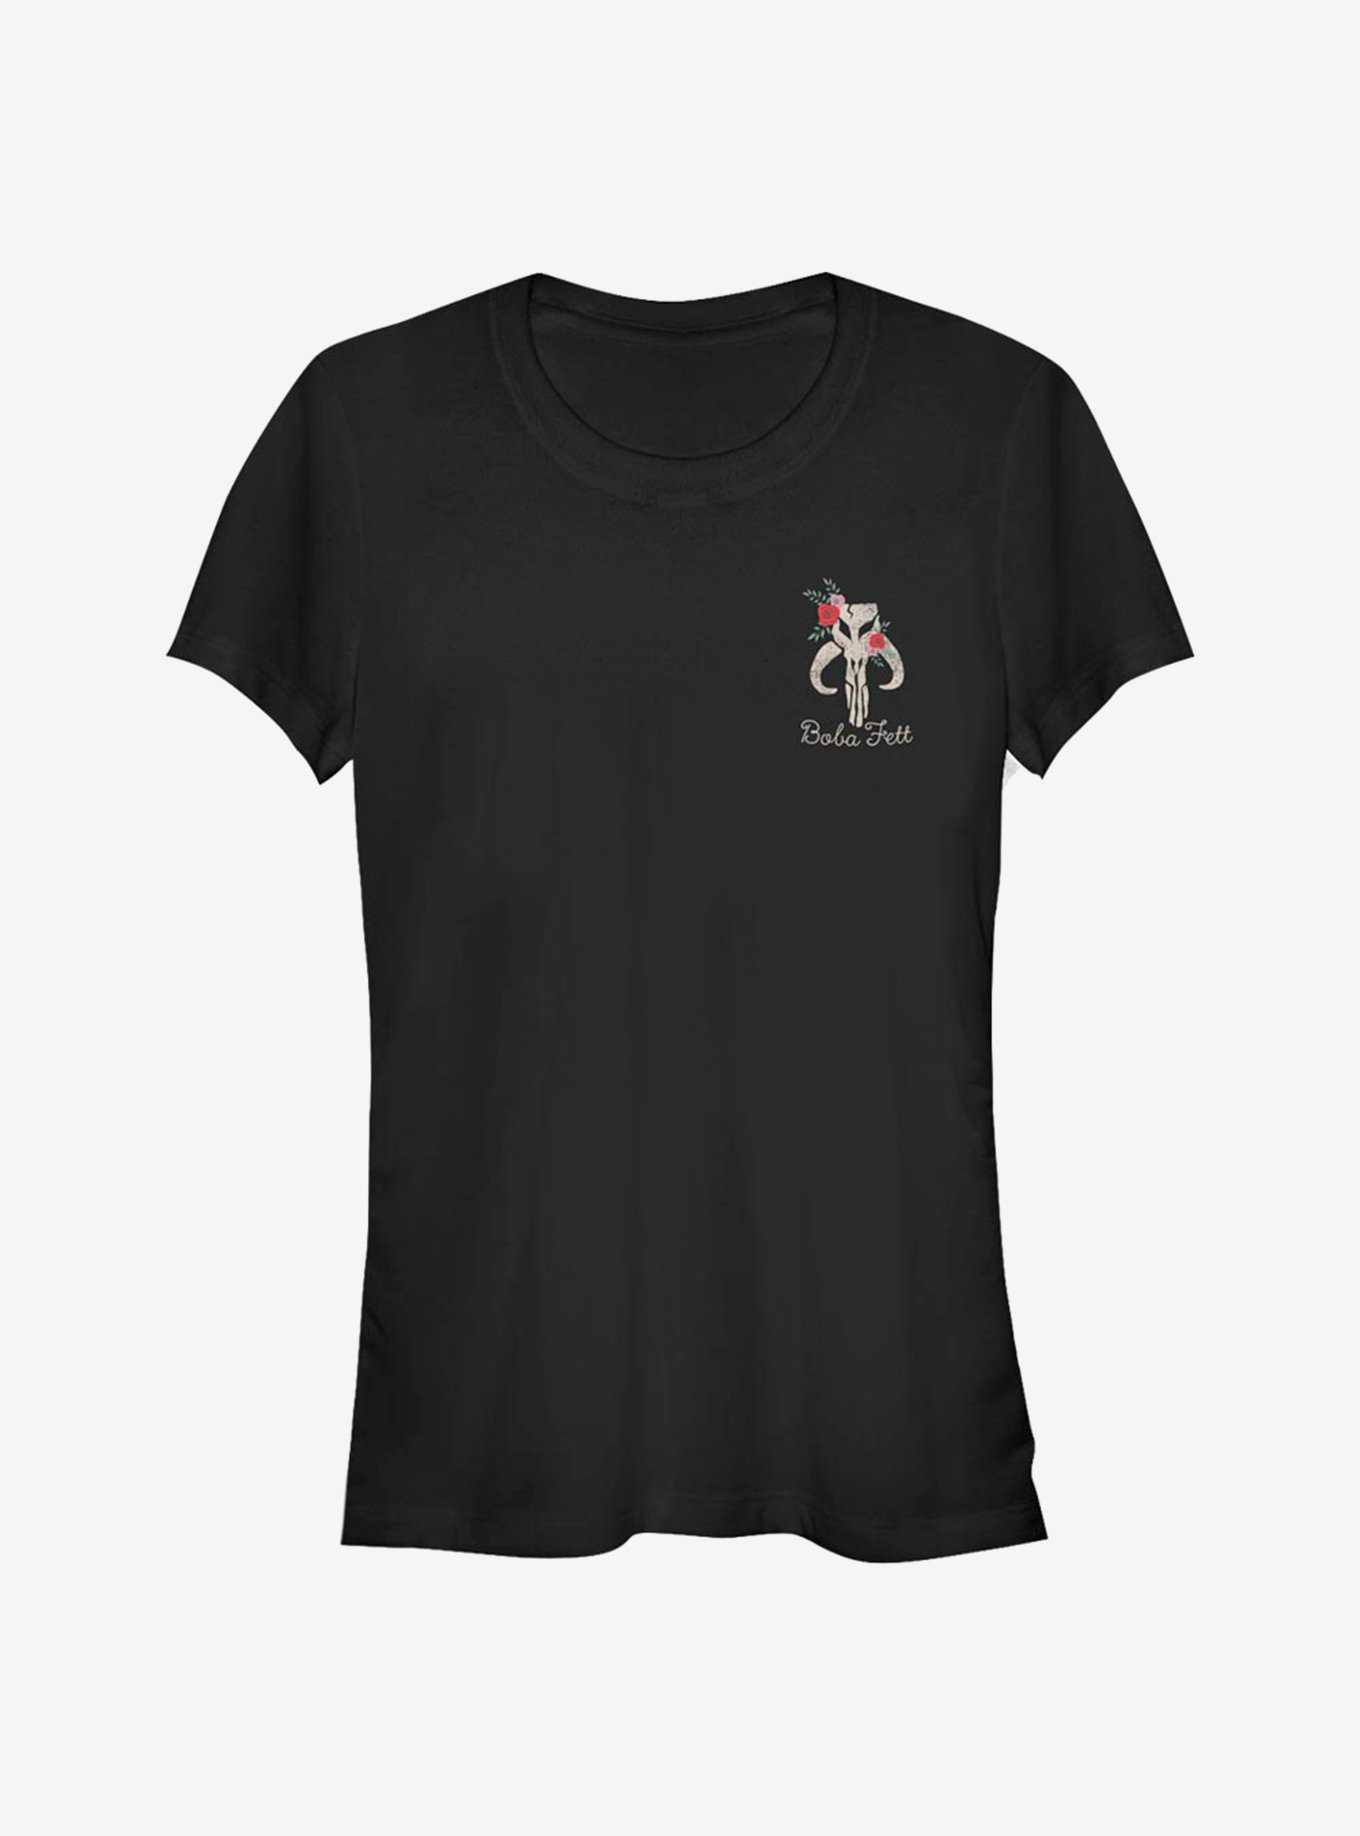 Star Wars Boba Fett Floral Badge Girls T-Shirt, , hi-res